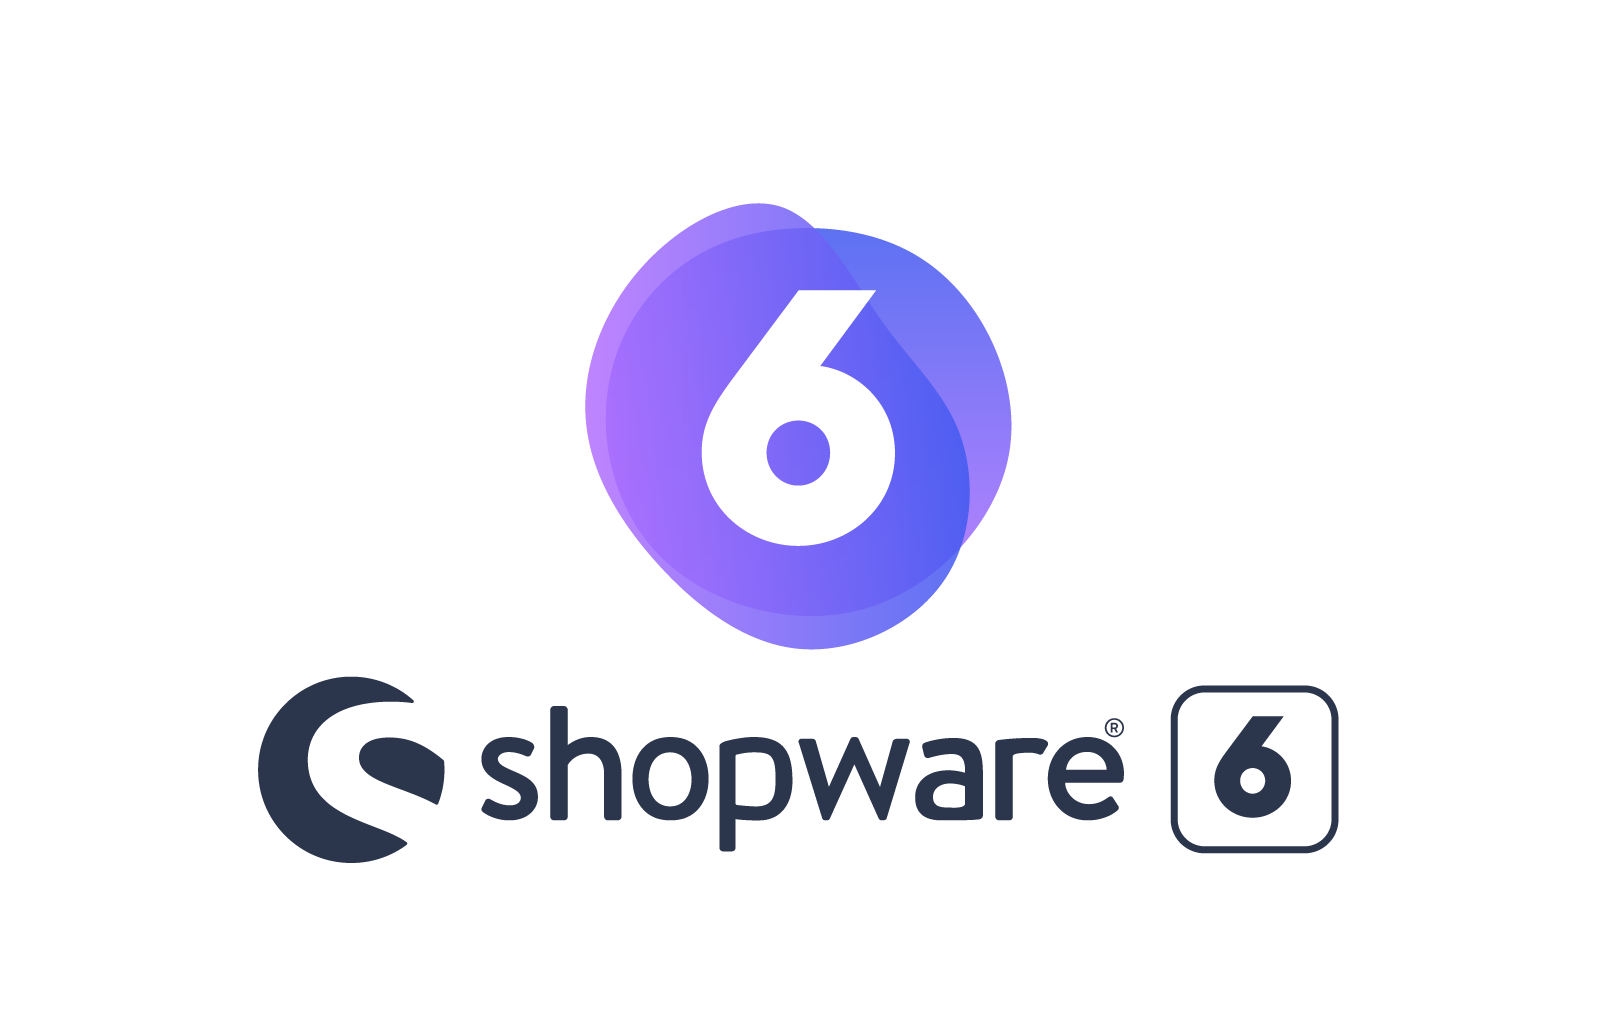 shopware 6 logo